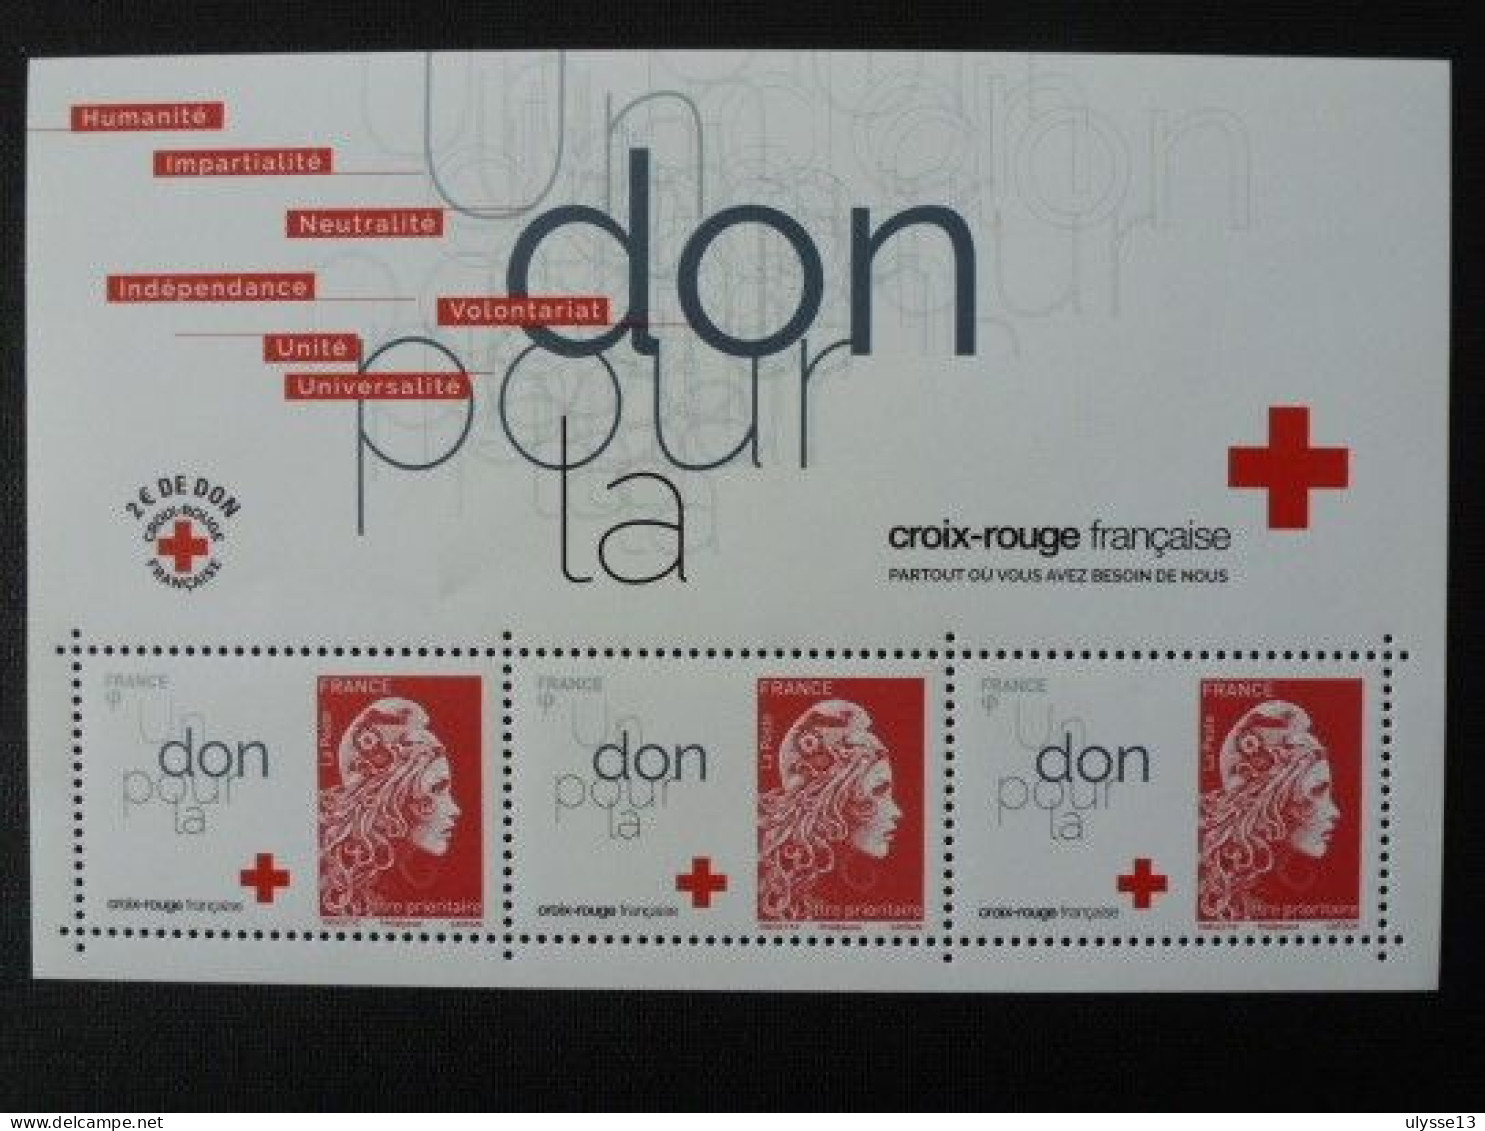 Année 2018 - Bloc Croix-Rouge Neuf N°145 - 20% De La Côte - Croix Rouge